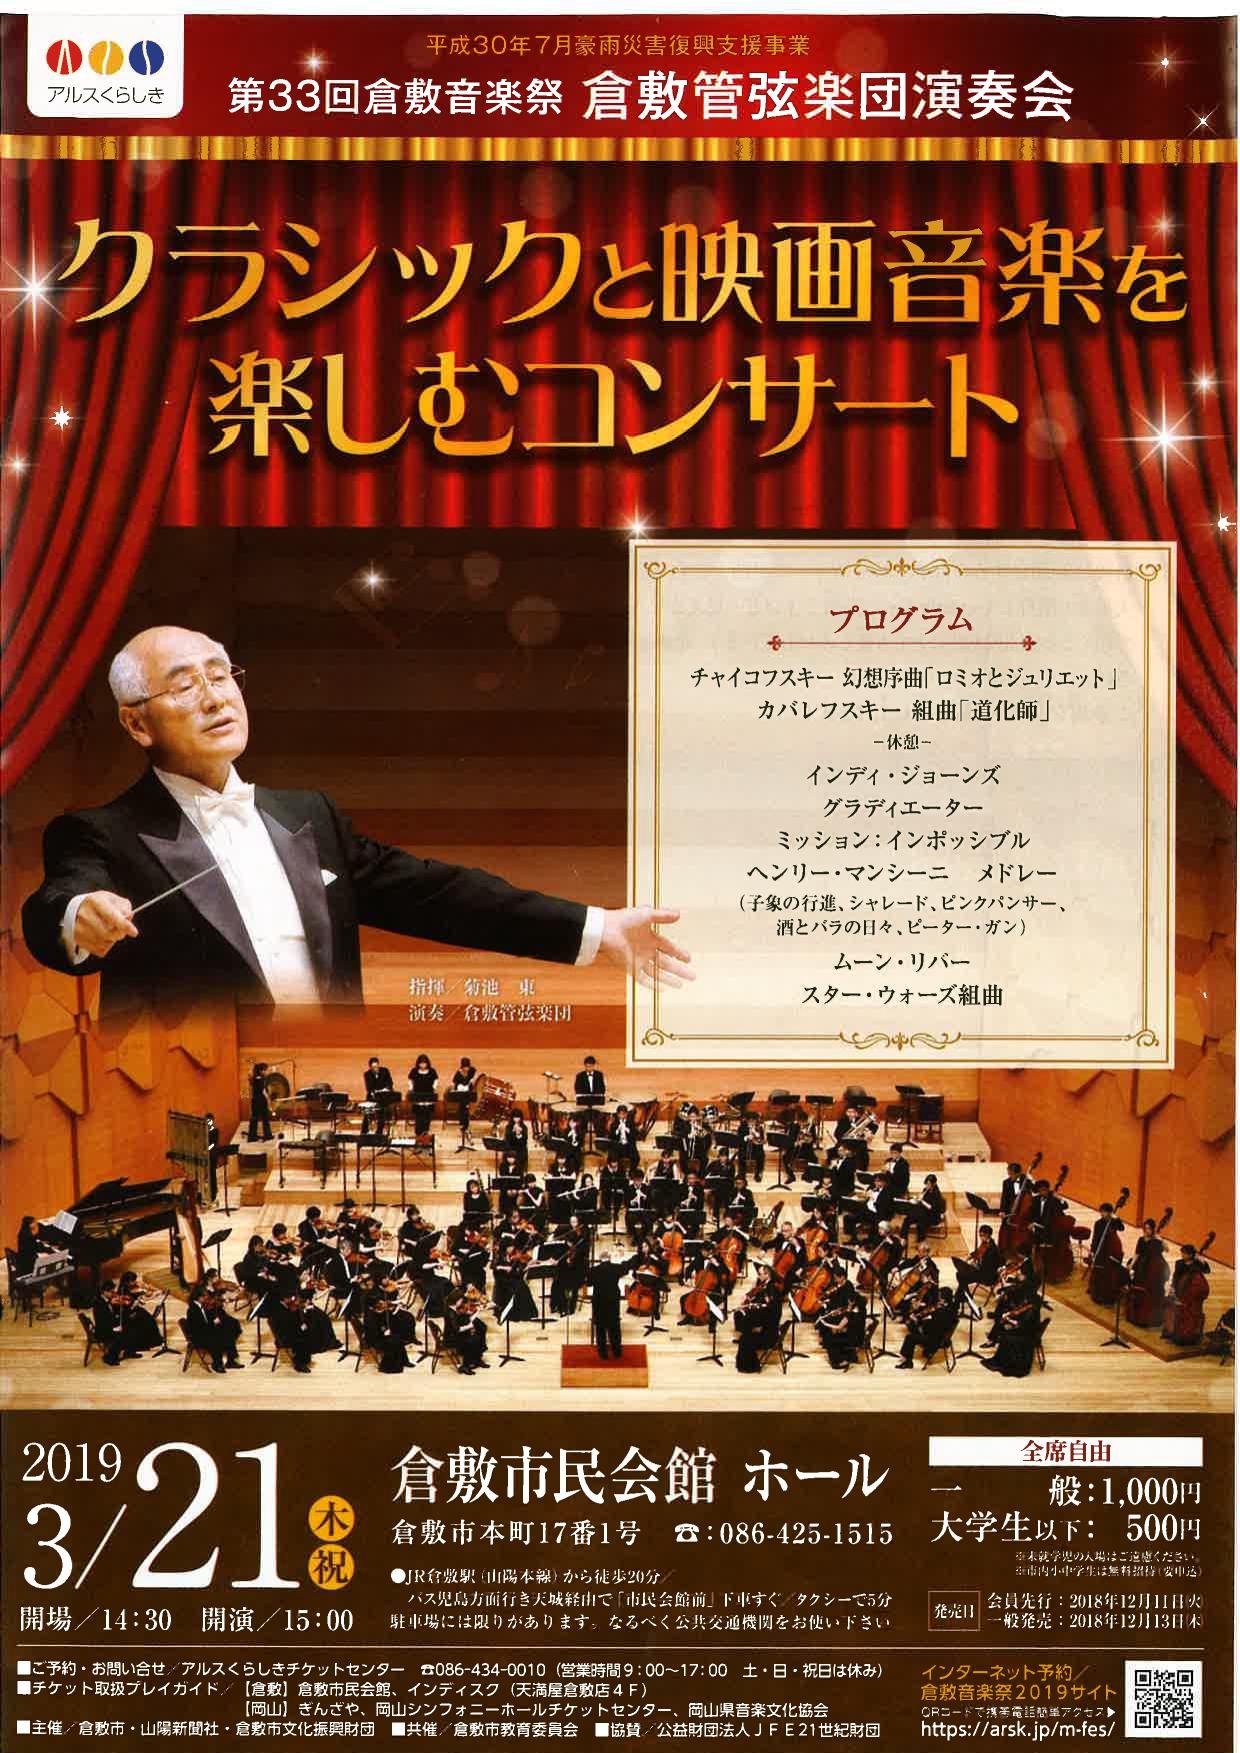 第33回倉敷音楽祭 倉敷管弦楽団演奏会 さまくるおかやま 岡山の情報をひとまとめに Summacle Okayama